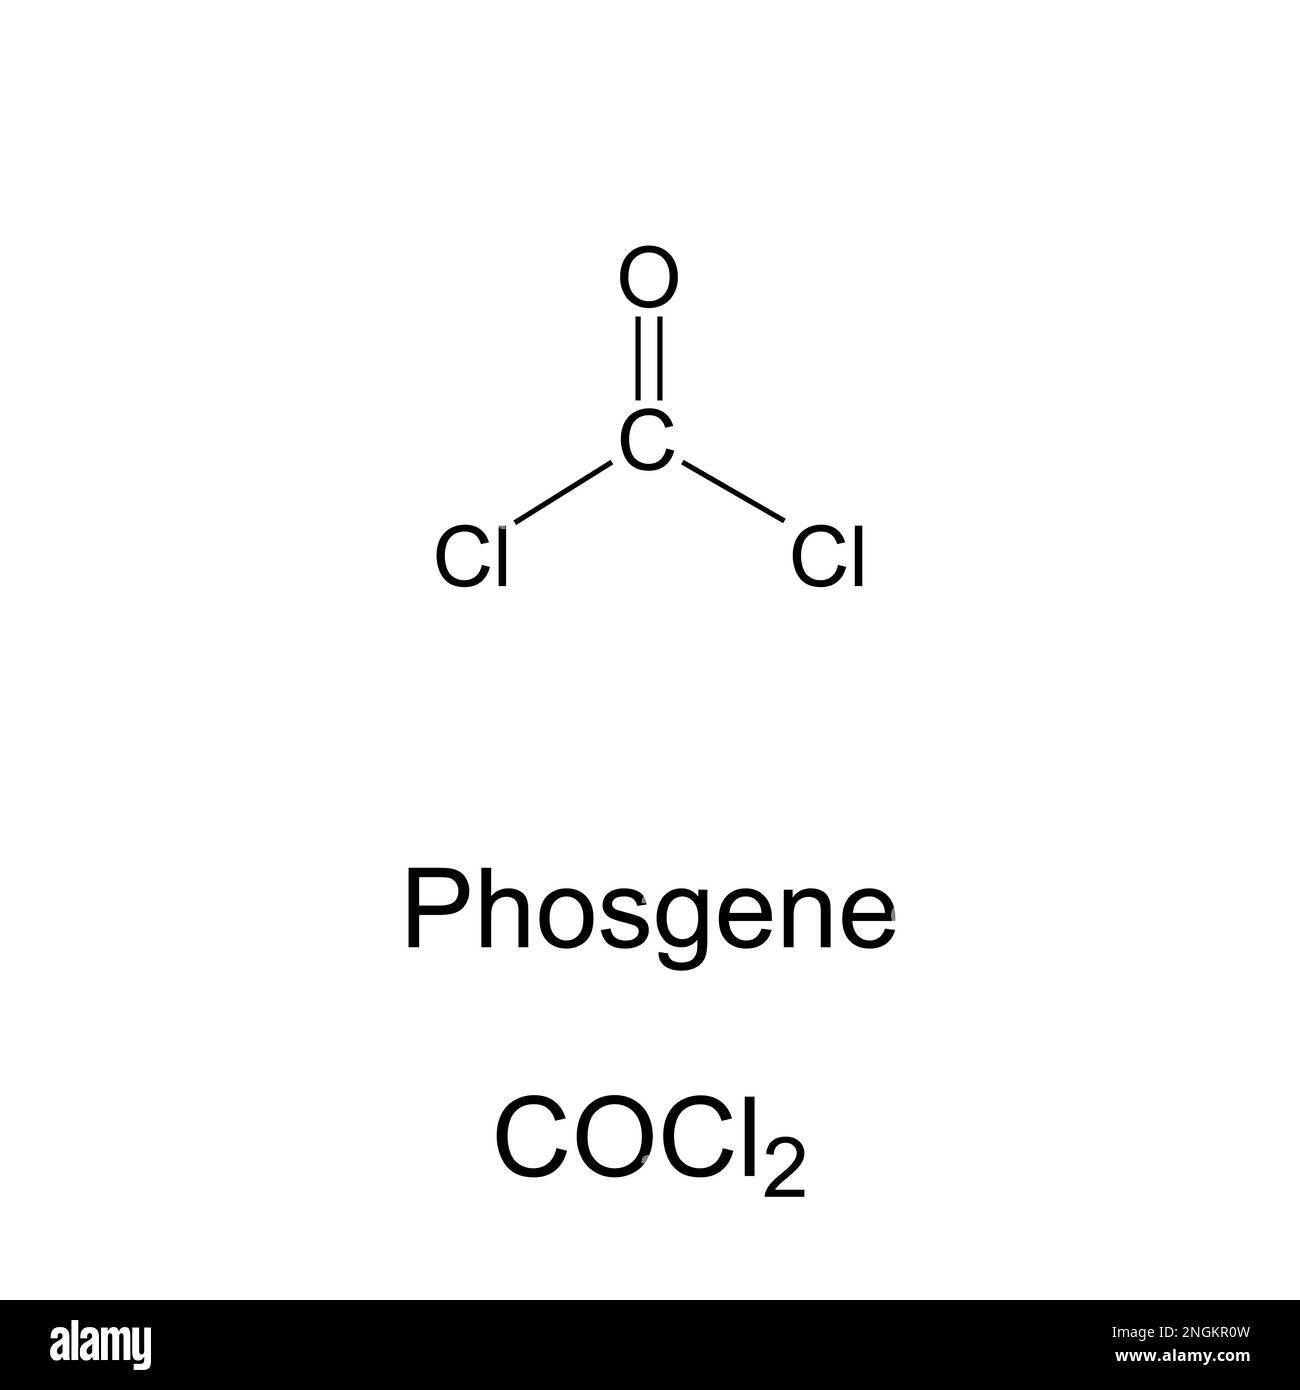 Phosgen, chemische Formel für Carbonyldichlorid. Giftiges farbloses Gas, das bei der Herstellung von Polyurethanen und Polycarbonat-Kunststoffen verwendet wird. Extrem giftig. Stockfoto